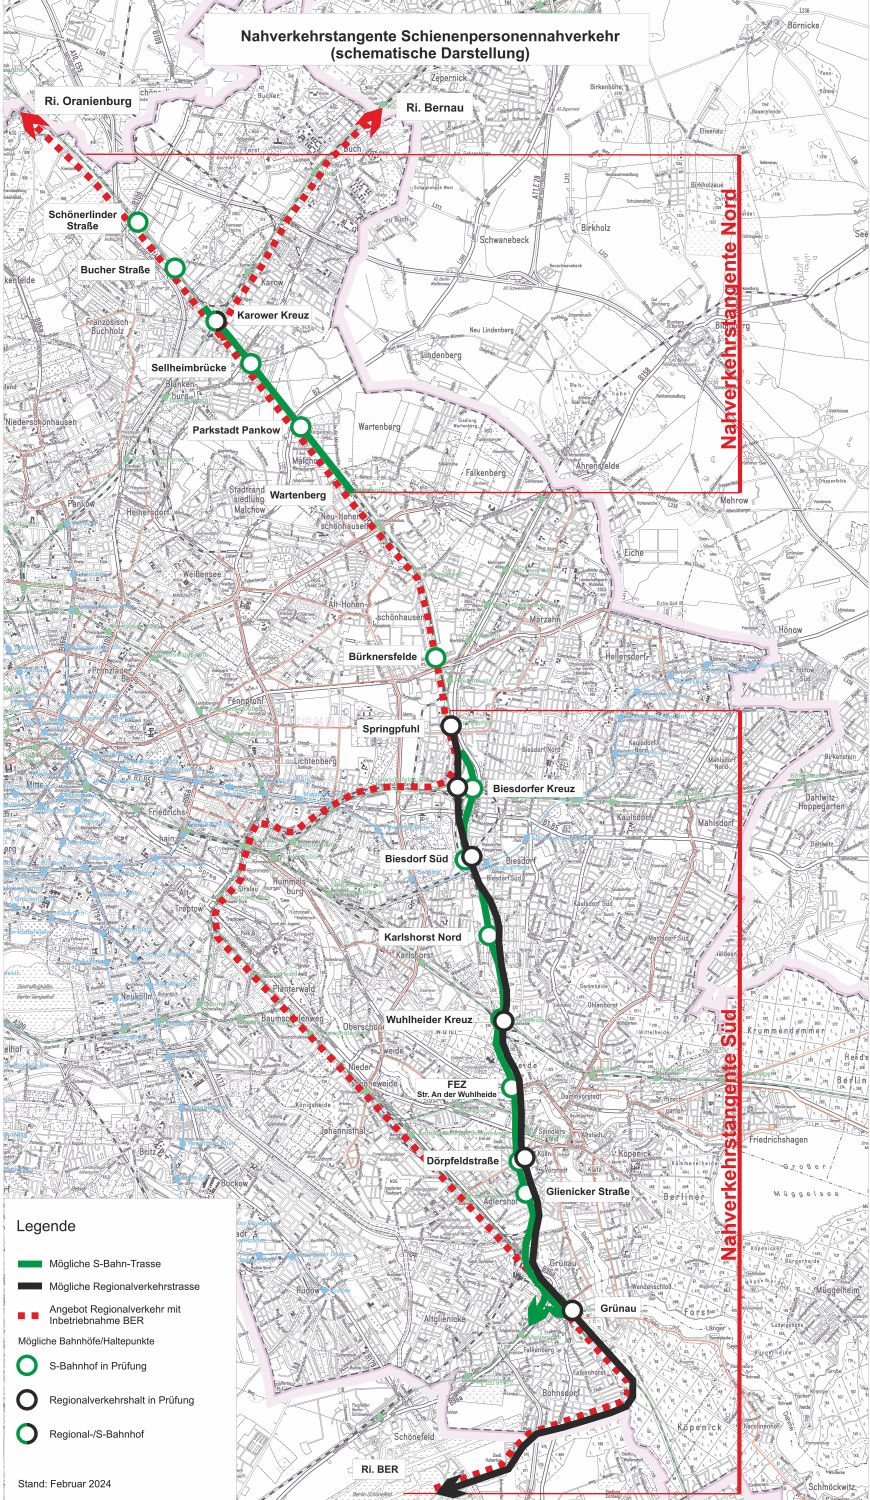 Nahverkehrstangente zum Schienenpersonennahverkehr auf dem östlichen Berliner Eisenbahnaußenring (schematische Darstellung)